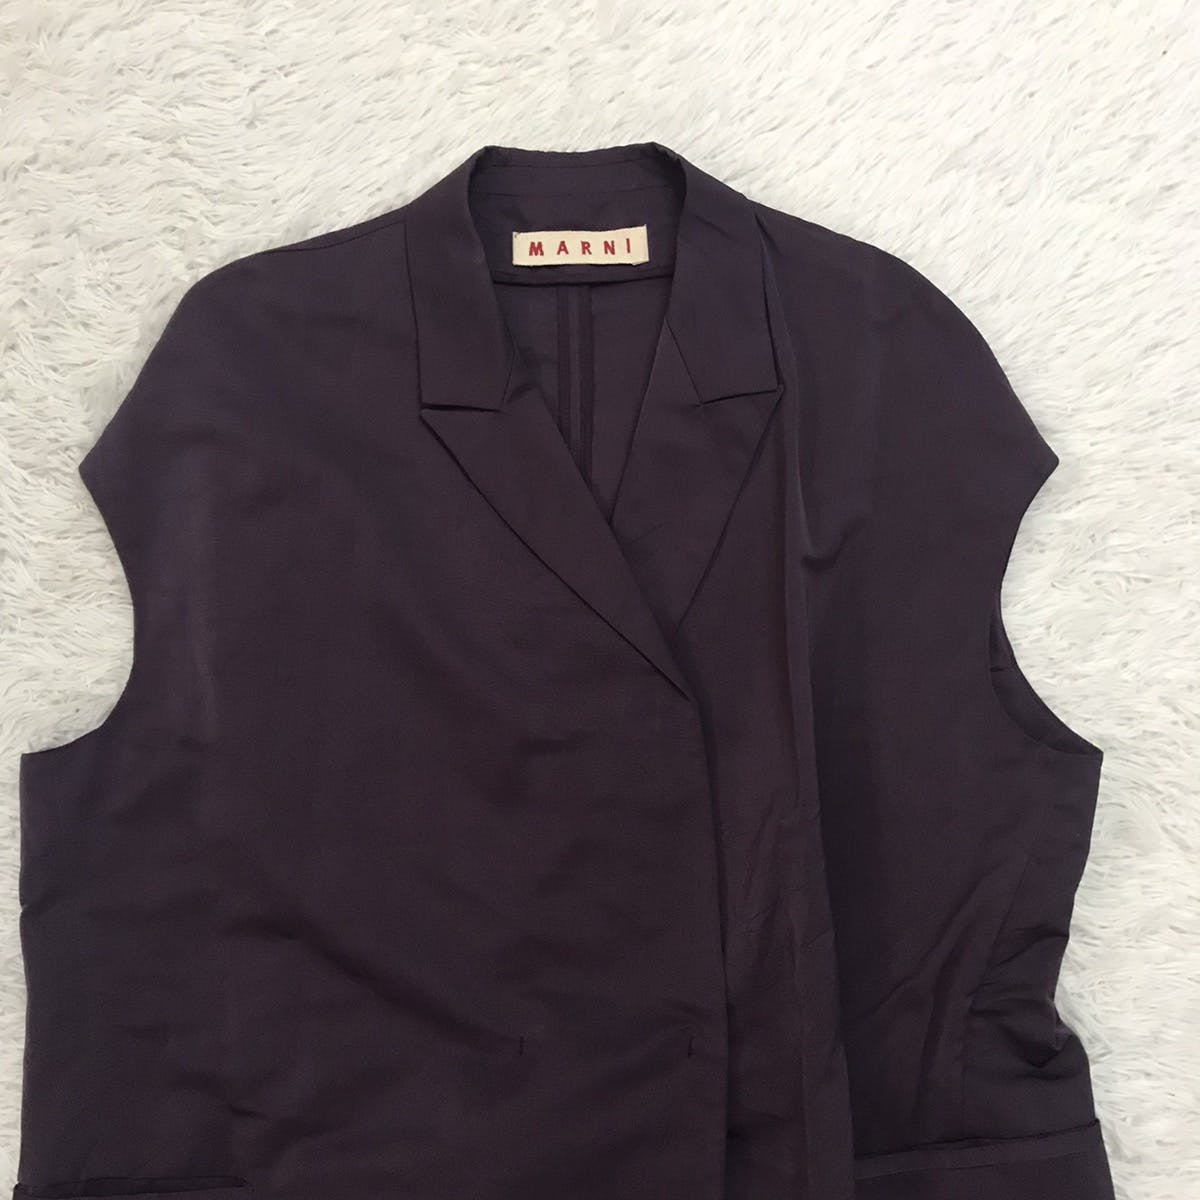 Marni Women Sleeveless Jacket Style Made in Italy - 3